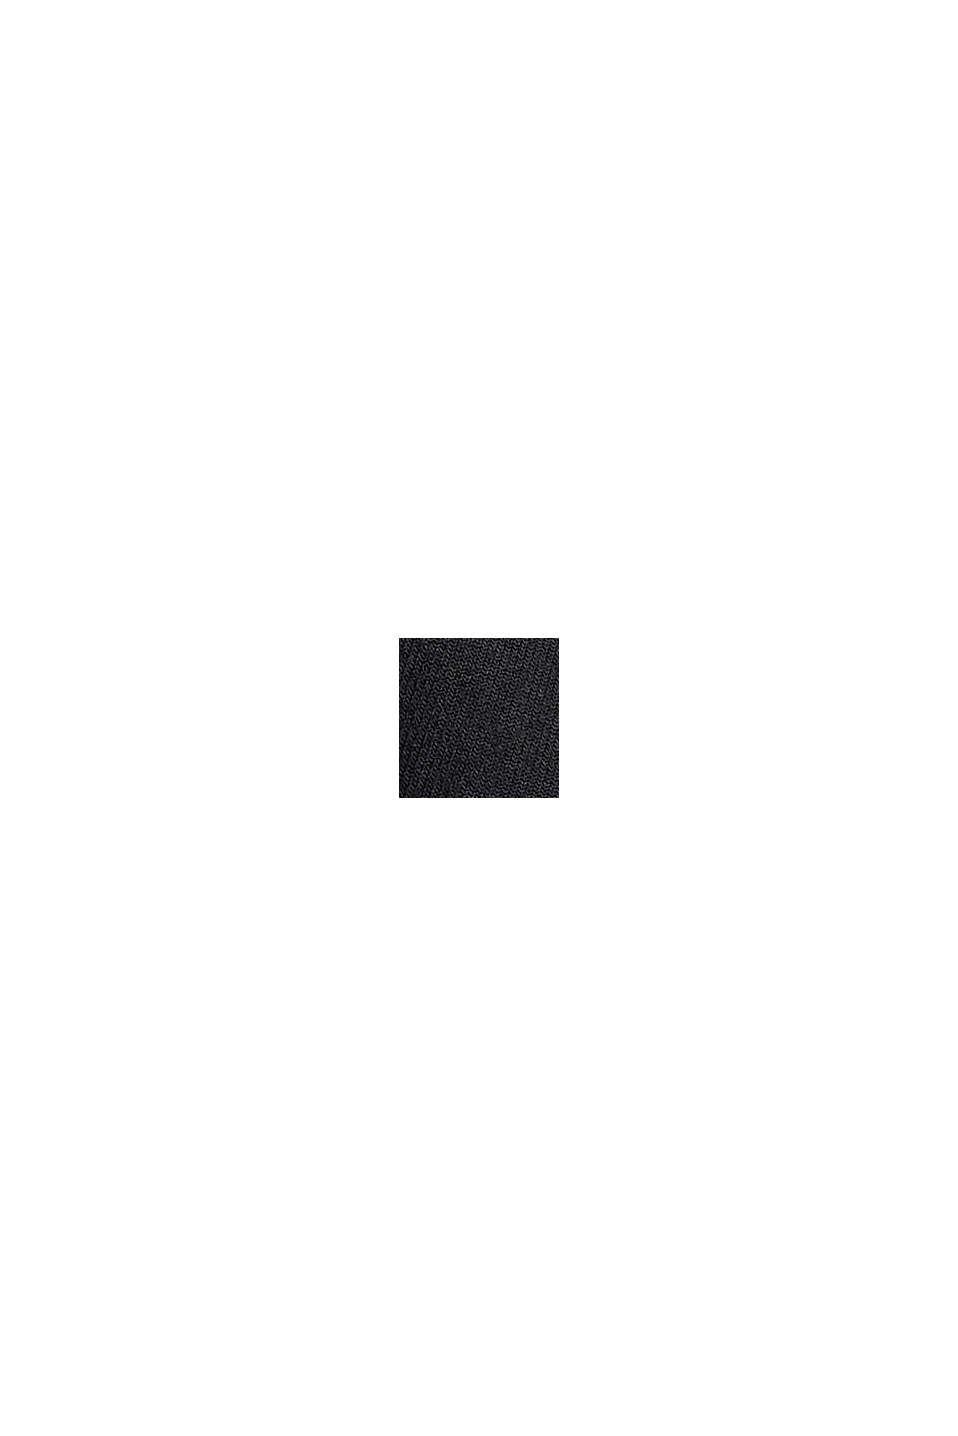 Reciclado: Minifalda con cinturón de lazada, BLACK, swatch